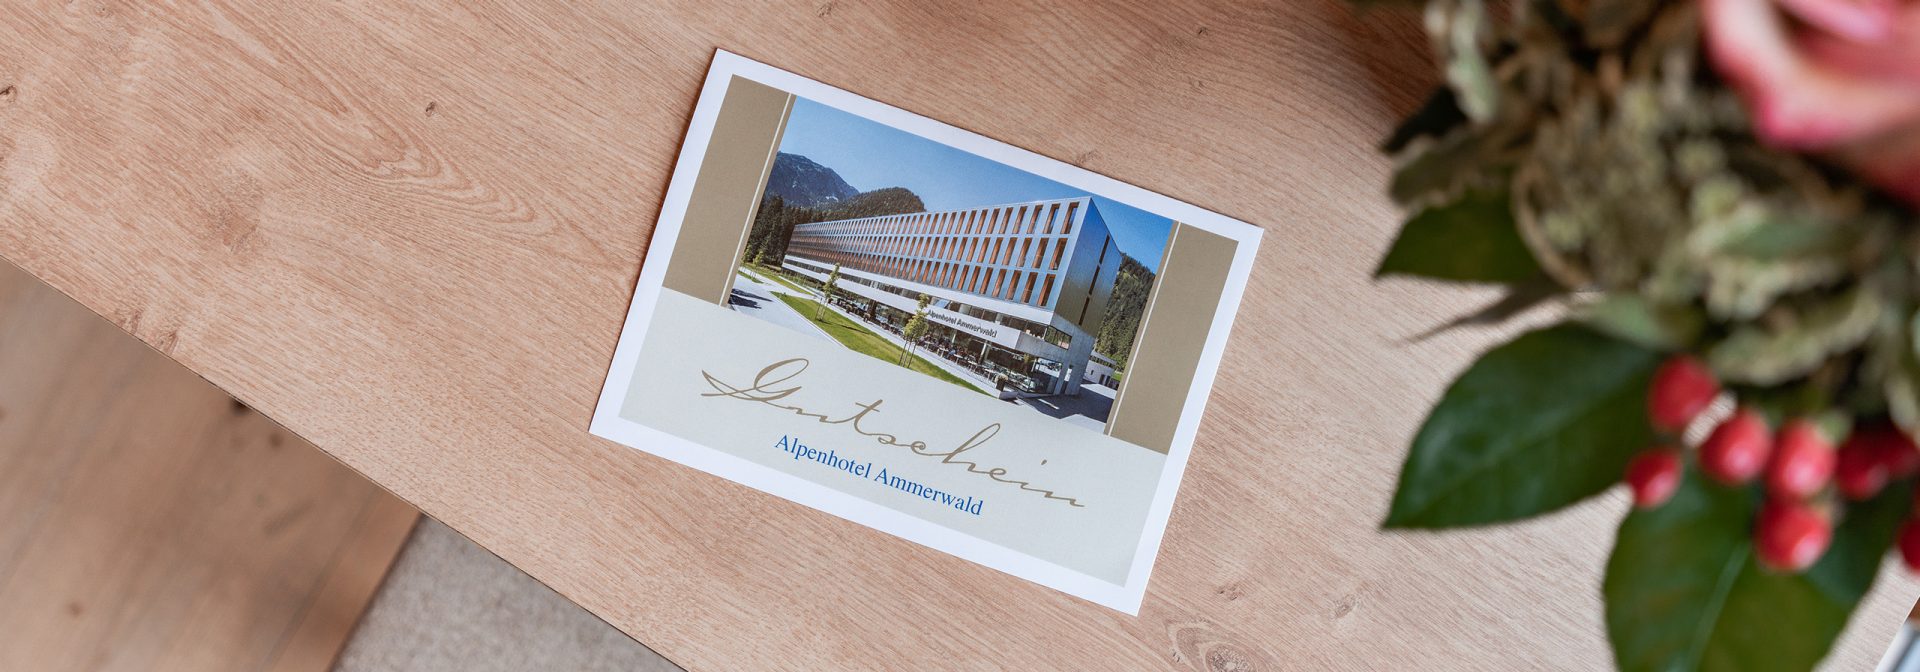 Bild eines Beispiel Gutscheines für das Alpenhotel Ammerwald, auf dem ein Bild vom Hotel abgebildet ist. 